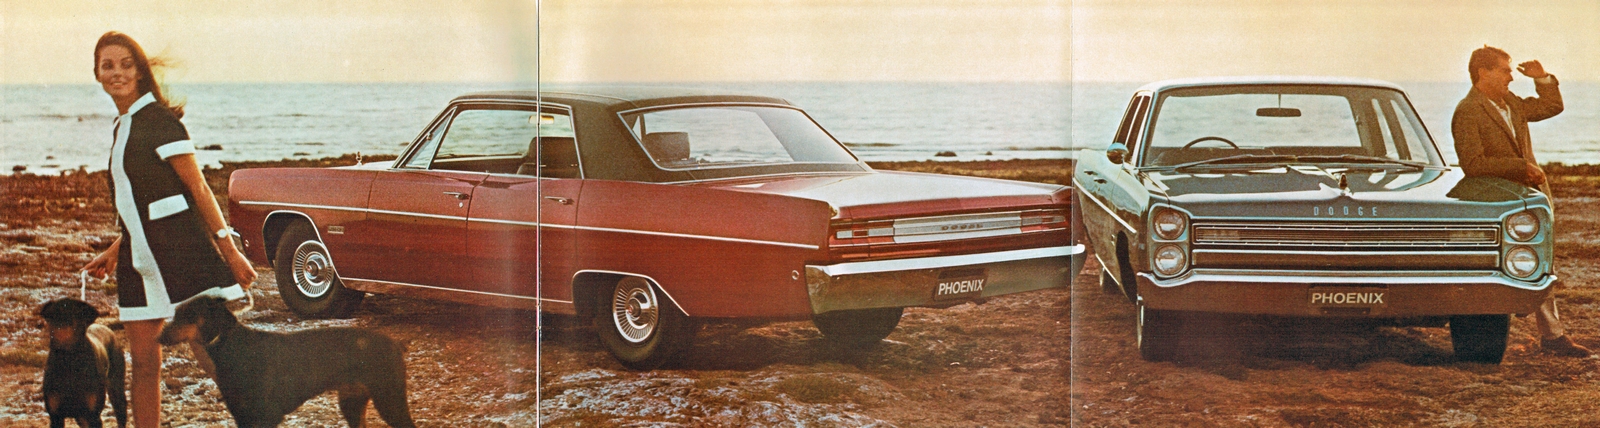 n_1968 Dodge Phoenix-02-03-04.jpg